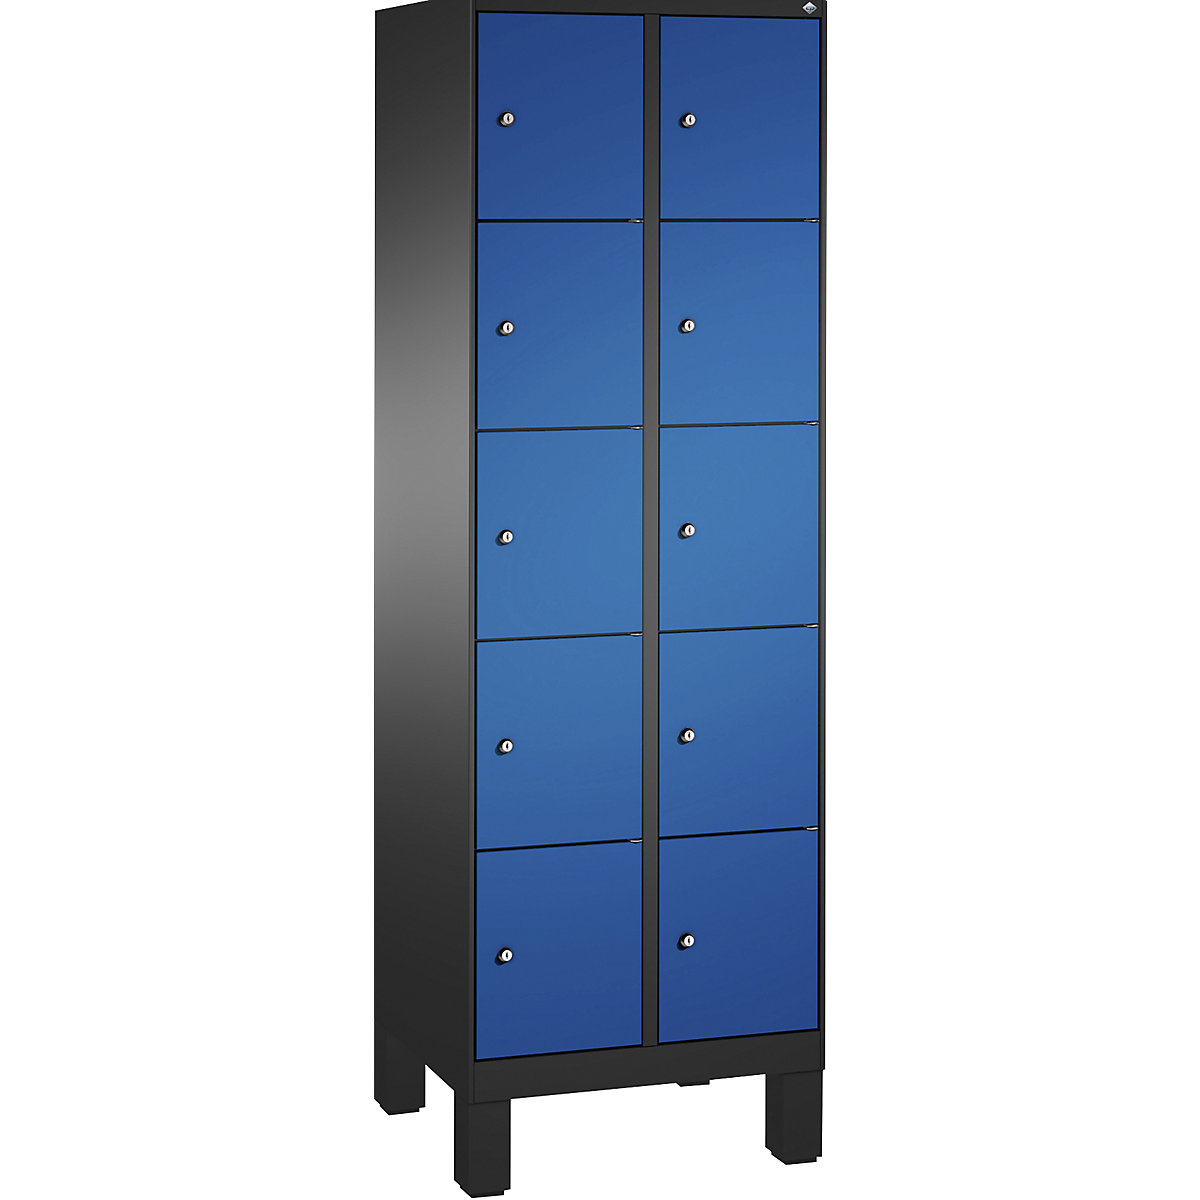 Armoire à casiers sur pieds EVOLO – C+P, 2 compartiments, 5 casiers chacun, largeur compartiments 300 mm, gris noir / bleu gentiane-16